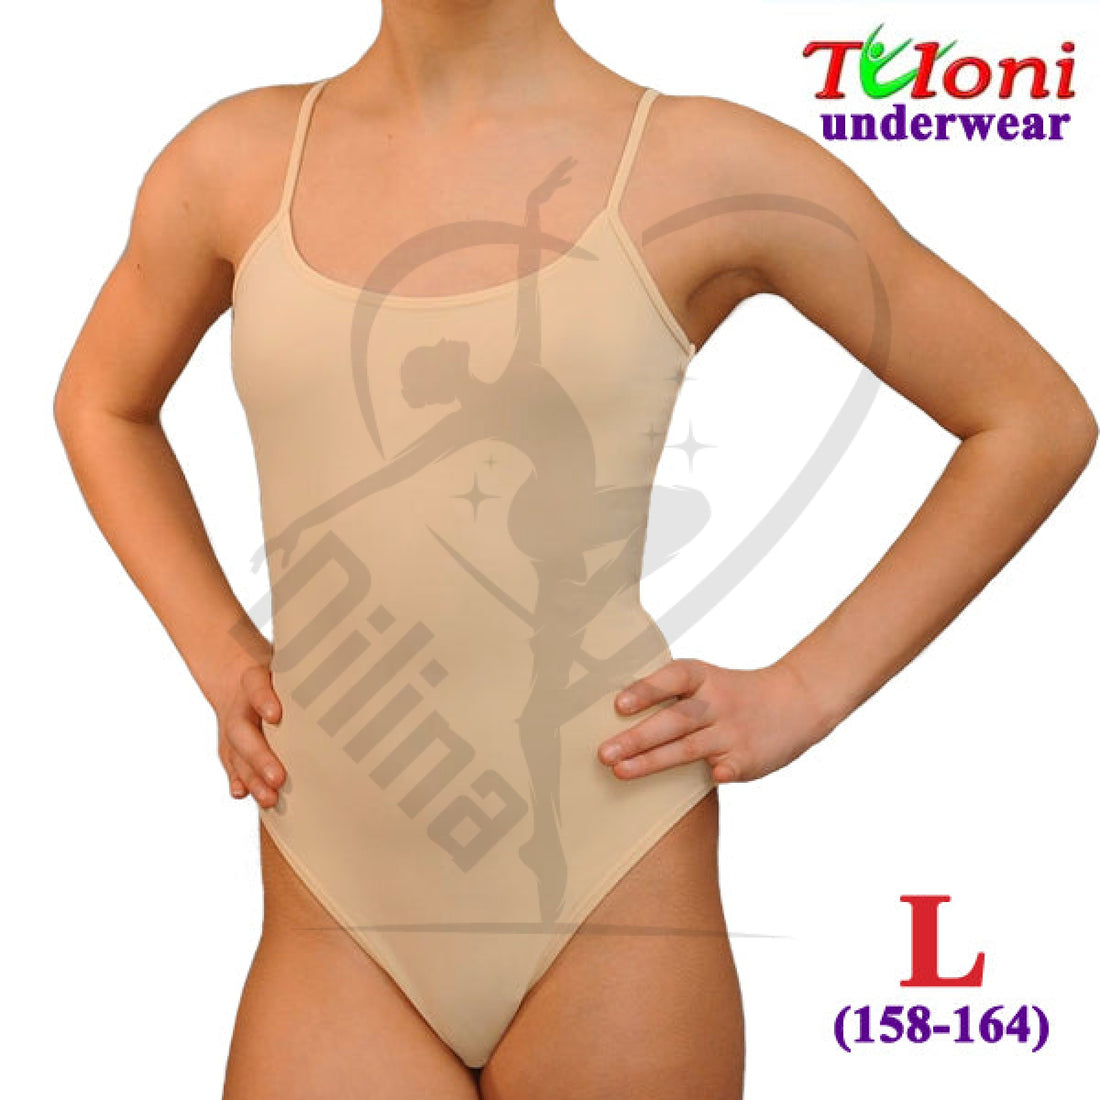 Tuloni Under Leotard L (158-164) Underwear